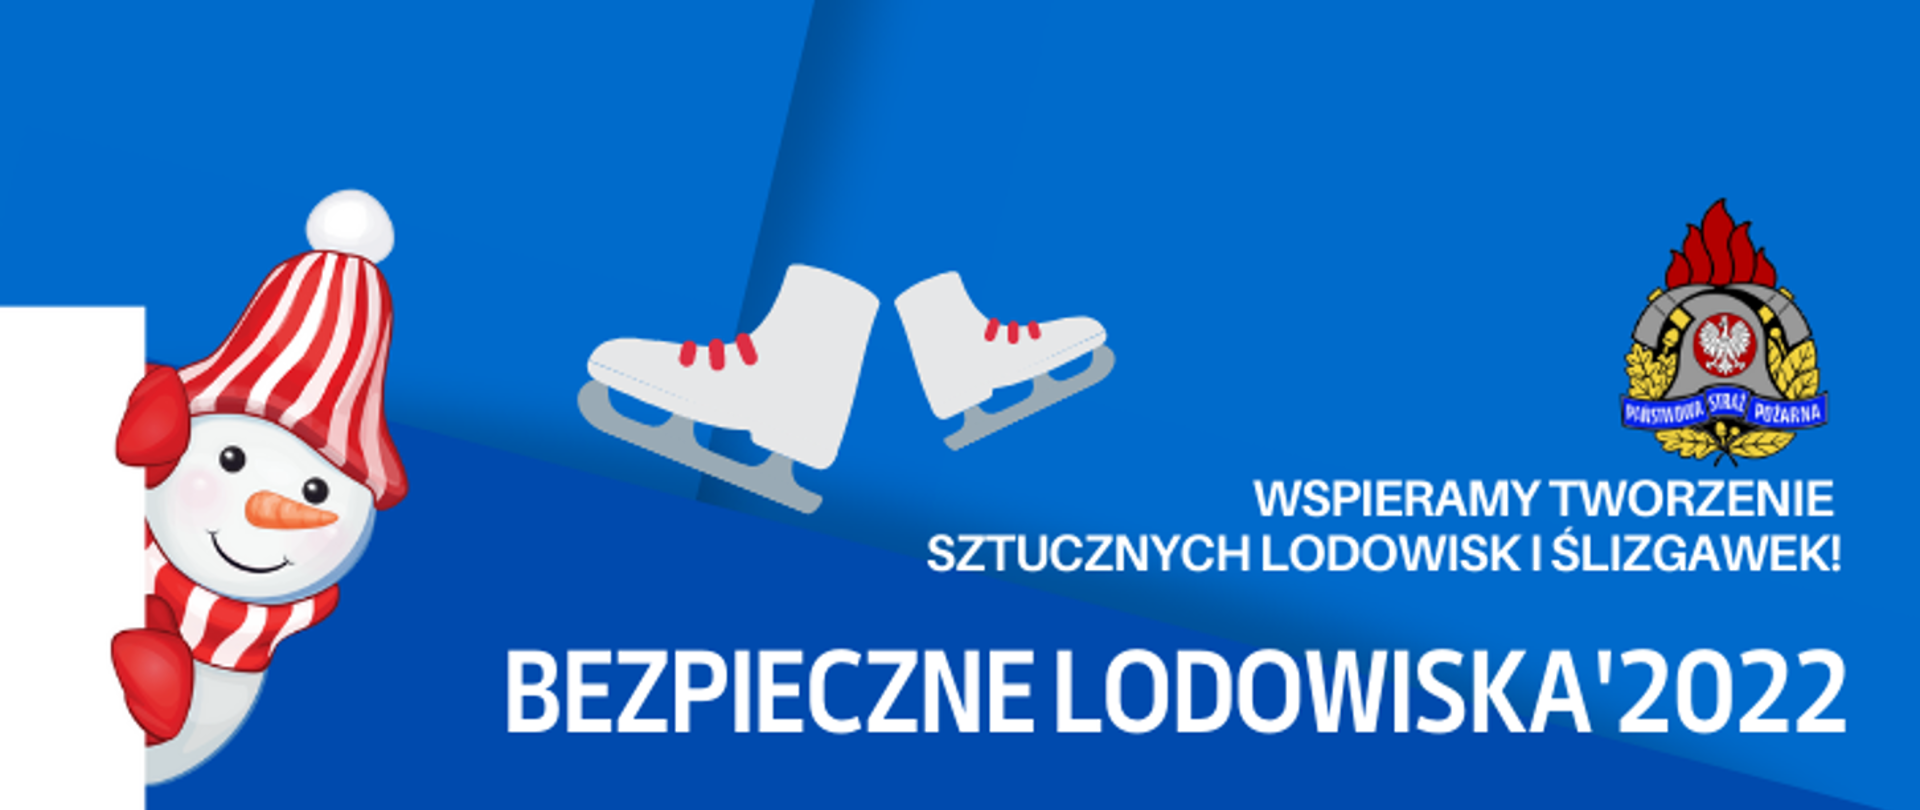 Grafika z białym napisem wspieramy tworzenie sztucznych lodowisk i ślizgawek! Bezpieczne lodowiska 2022, niebieskie tło. Po prawej logo PSP, po lewej bałwanek w czerwono-białej czapce, po środku rysunek białych łyżew. 